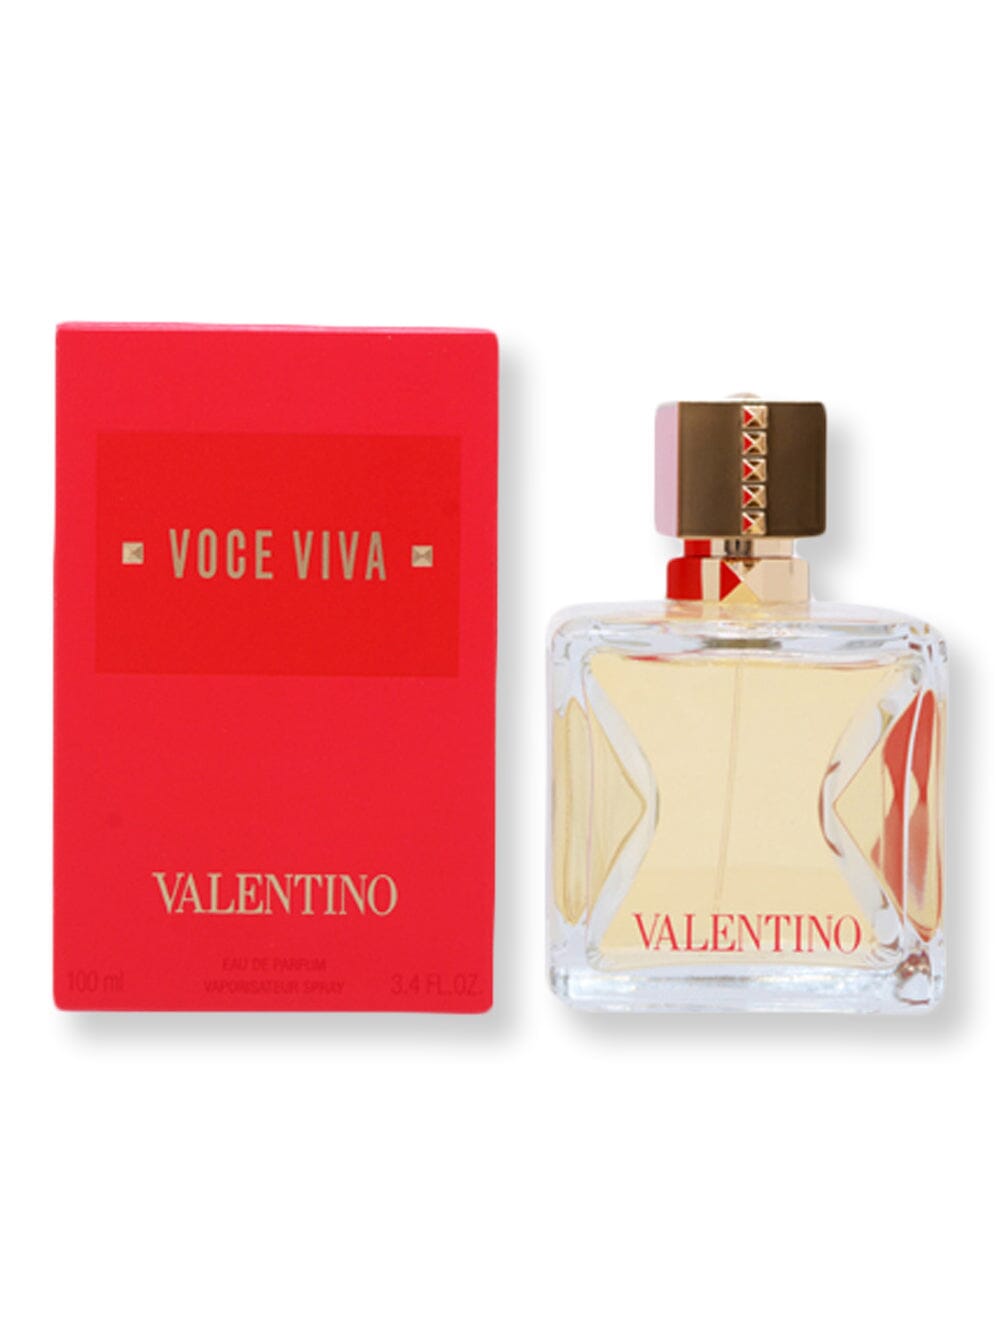 Valentino Valentino Voce Viva EDP Spray 3.4 oz100 ml Perfume 